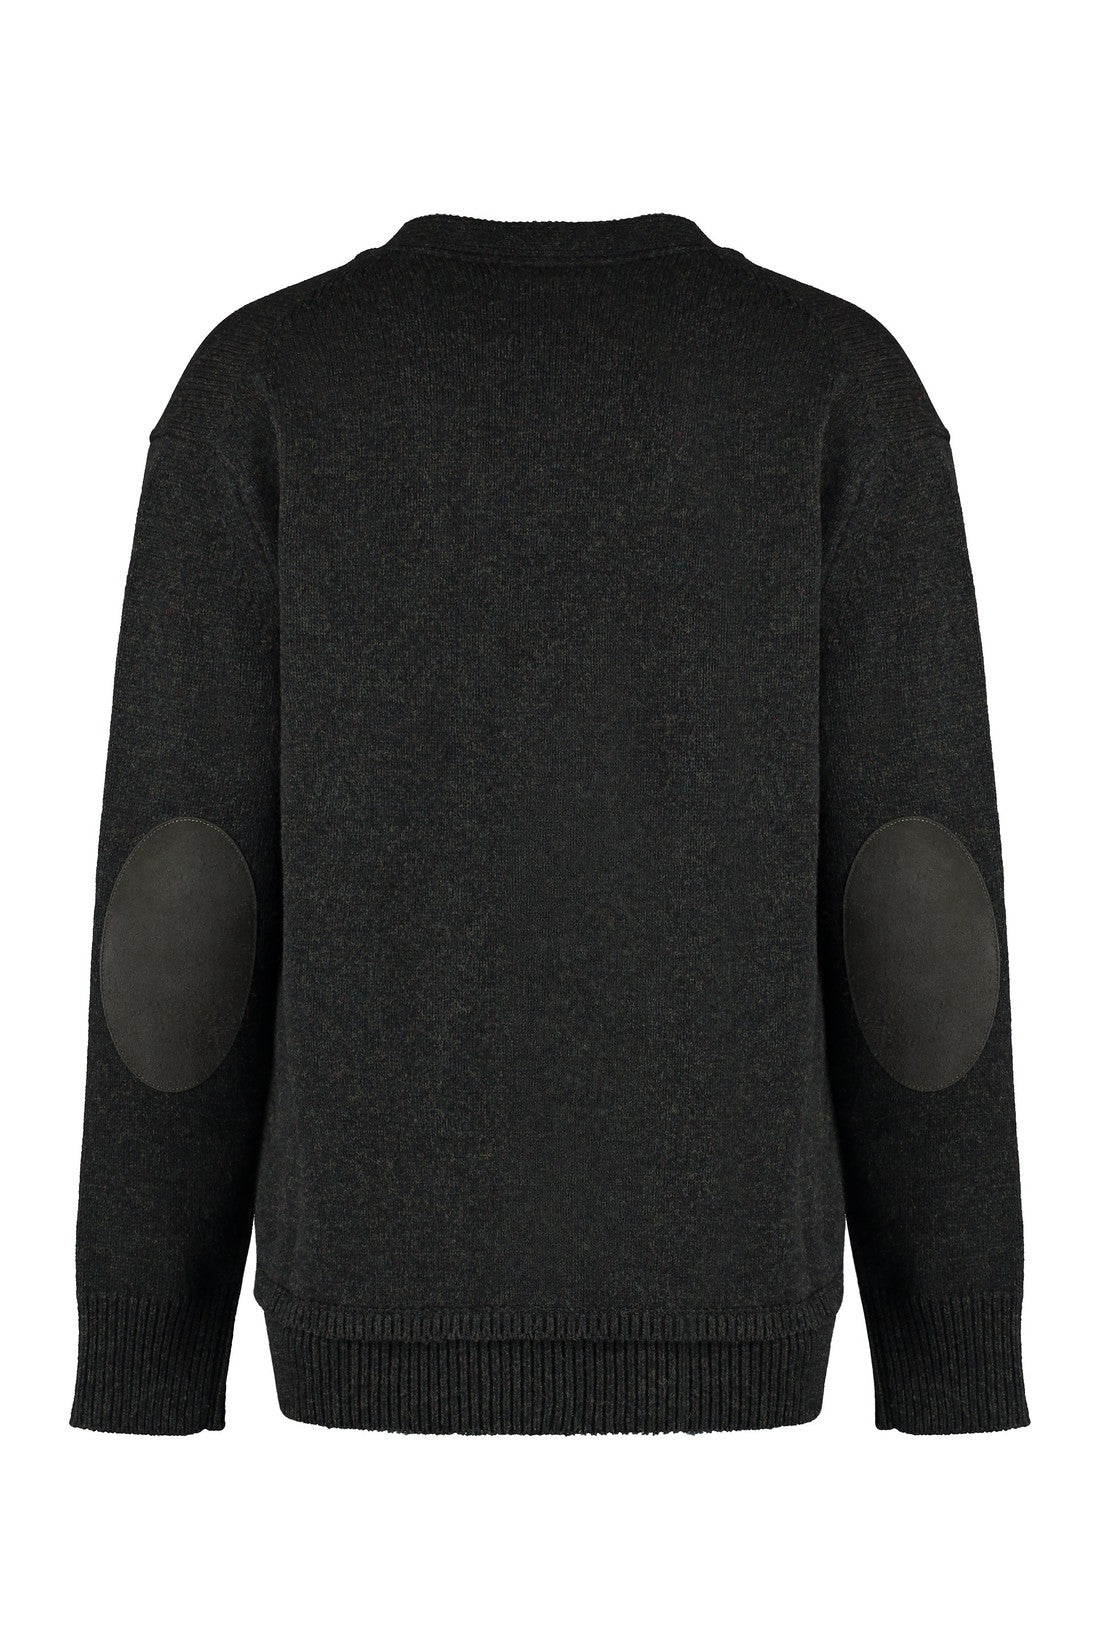 Maison Margiela-OUTLET-SALE-Wool blend sweater-ARCHIVIST